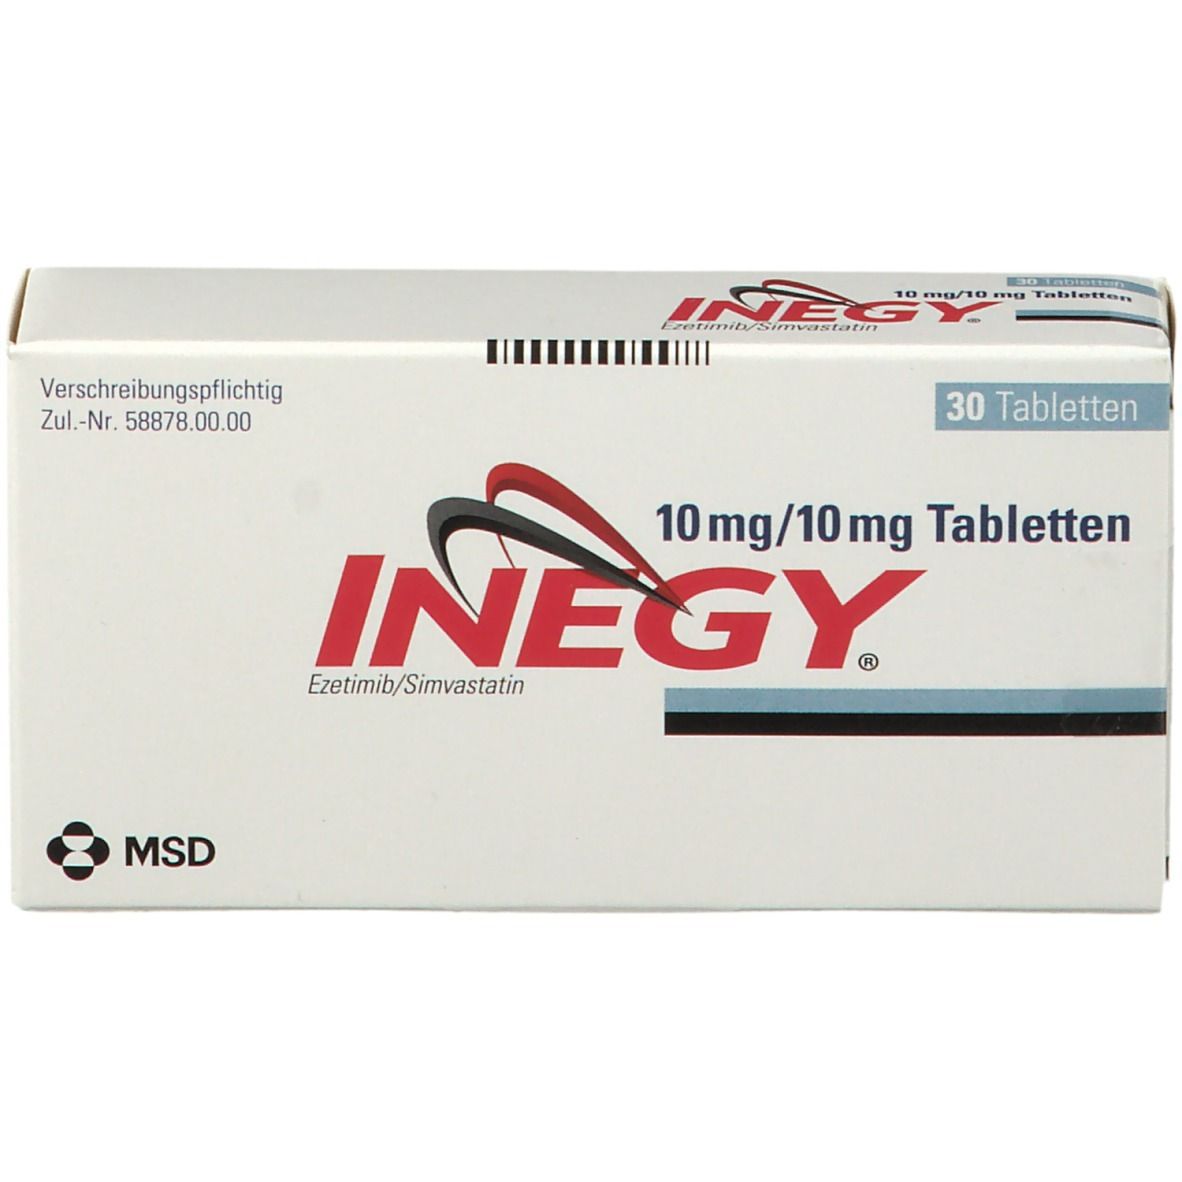 INEGY® 10 mg/10 mg